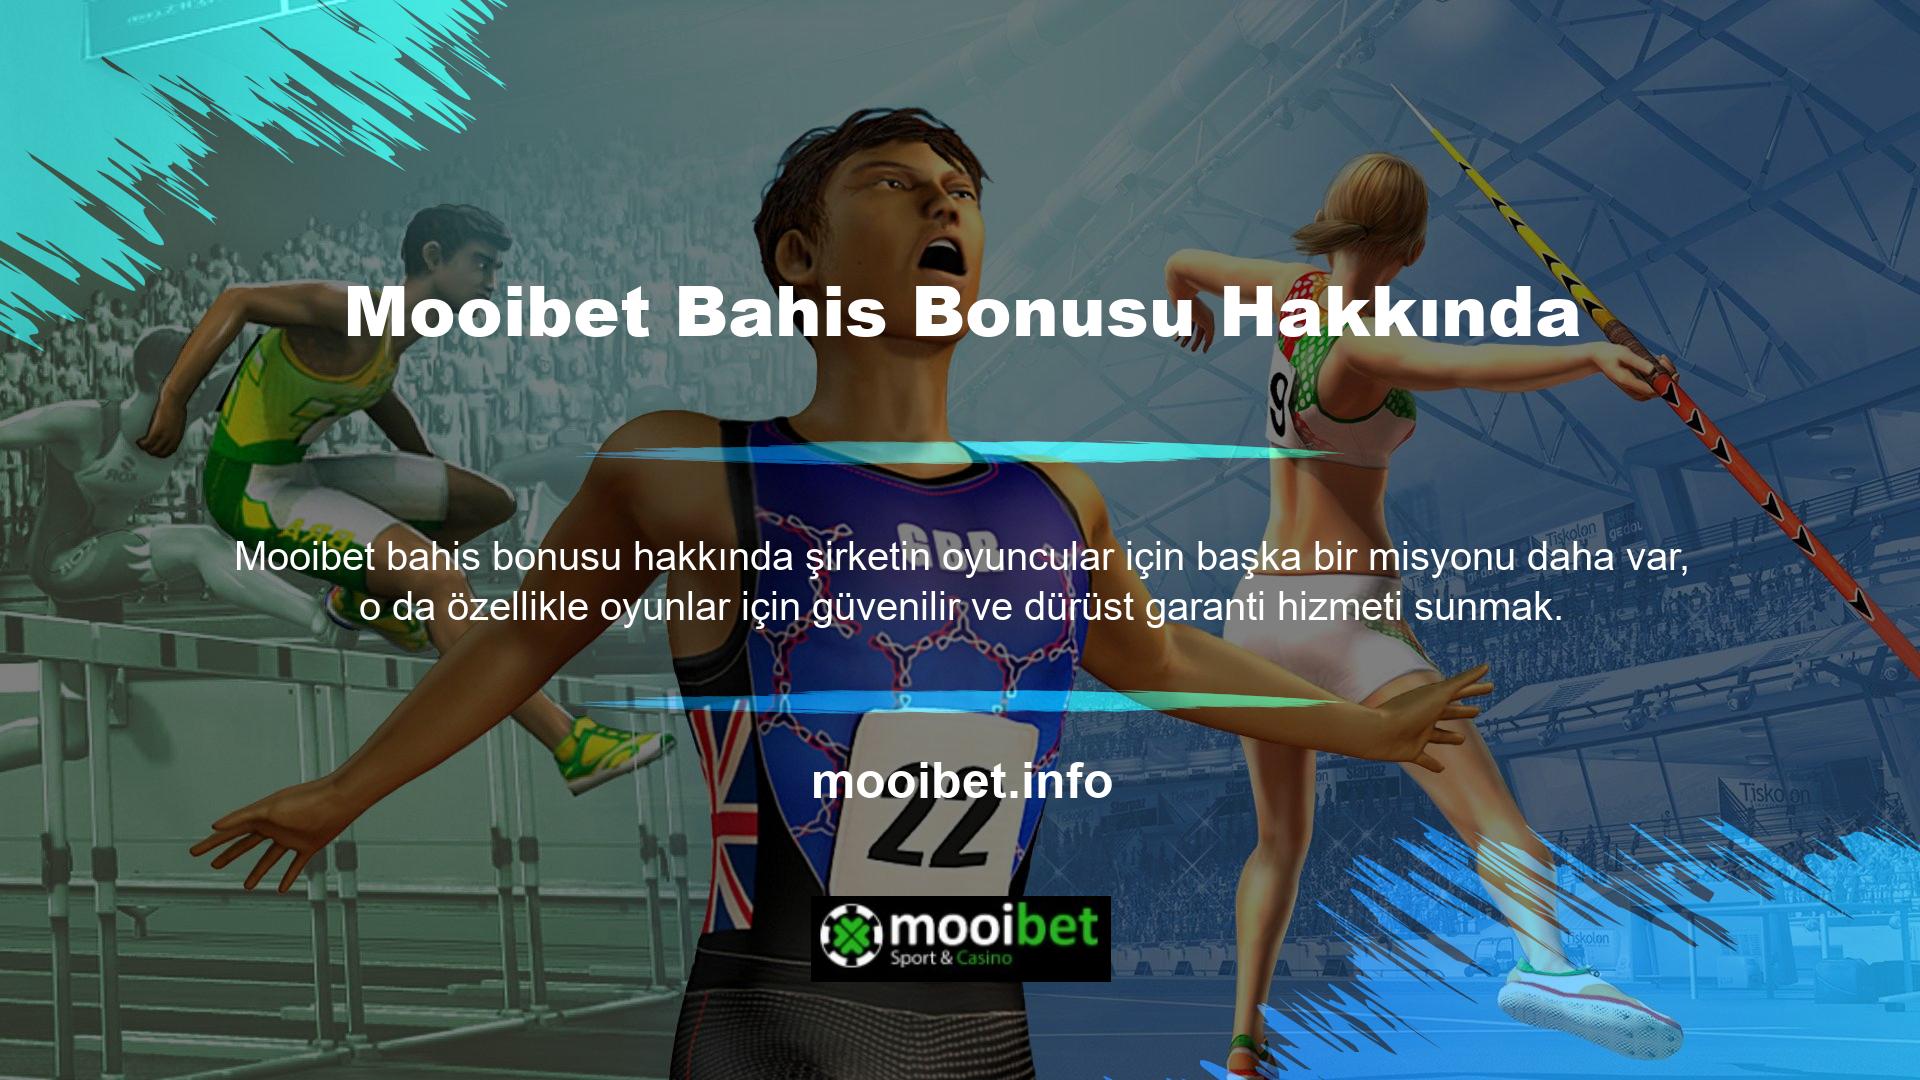 Mooibet sitesinin kullanıcılarına sunduğu ödüllerden yararlanmak için yardım hattı promosyonu talep edebilir ve çözüm sunabilirsiniz